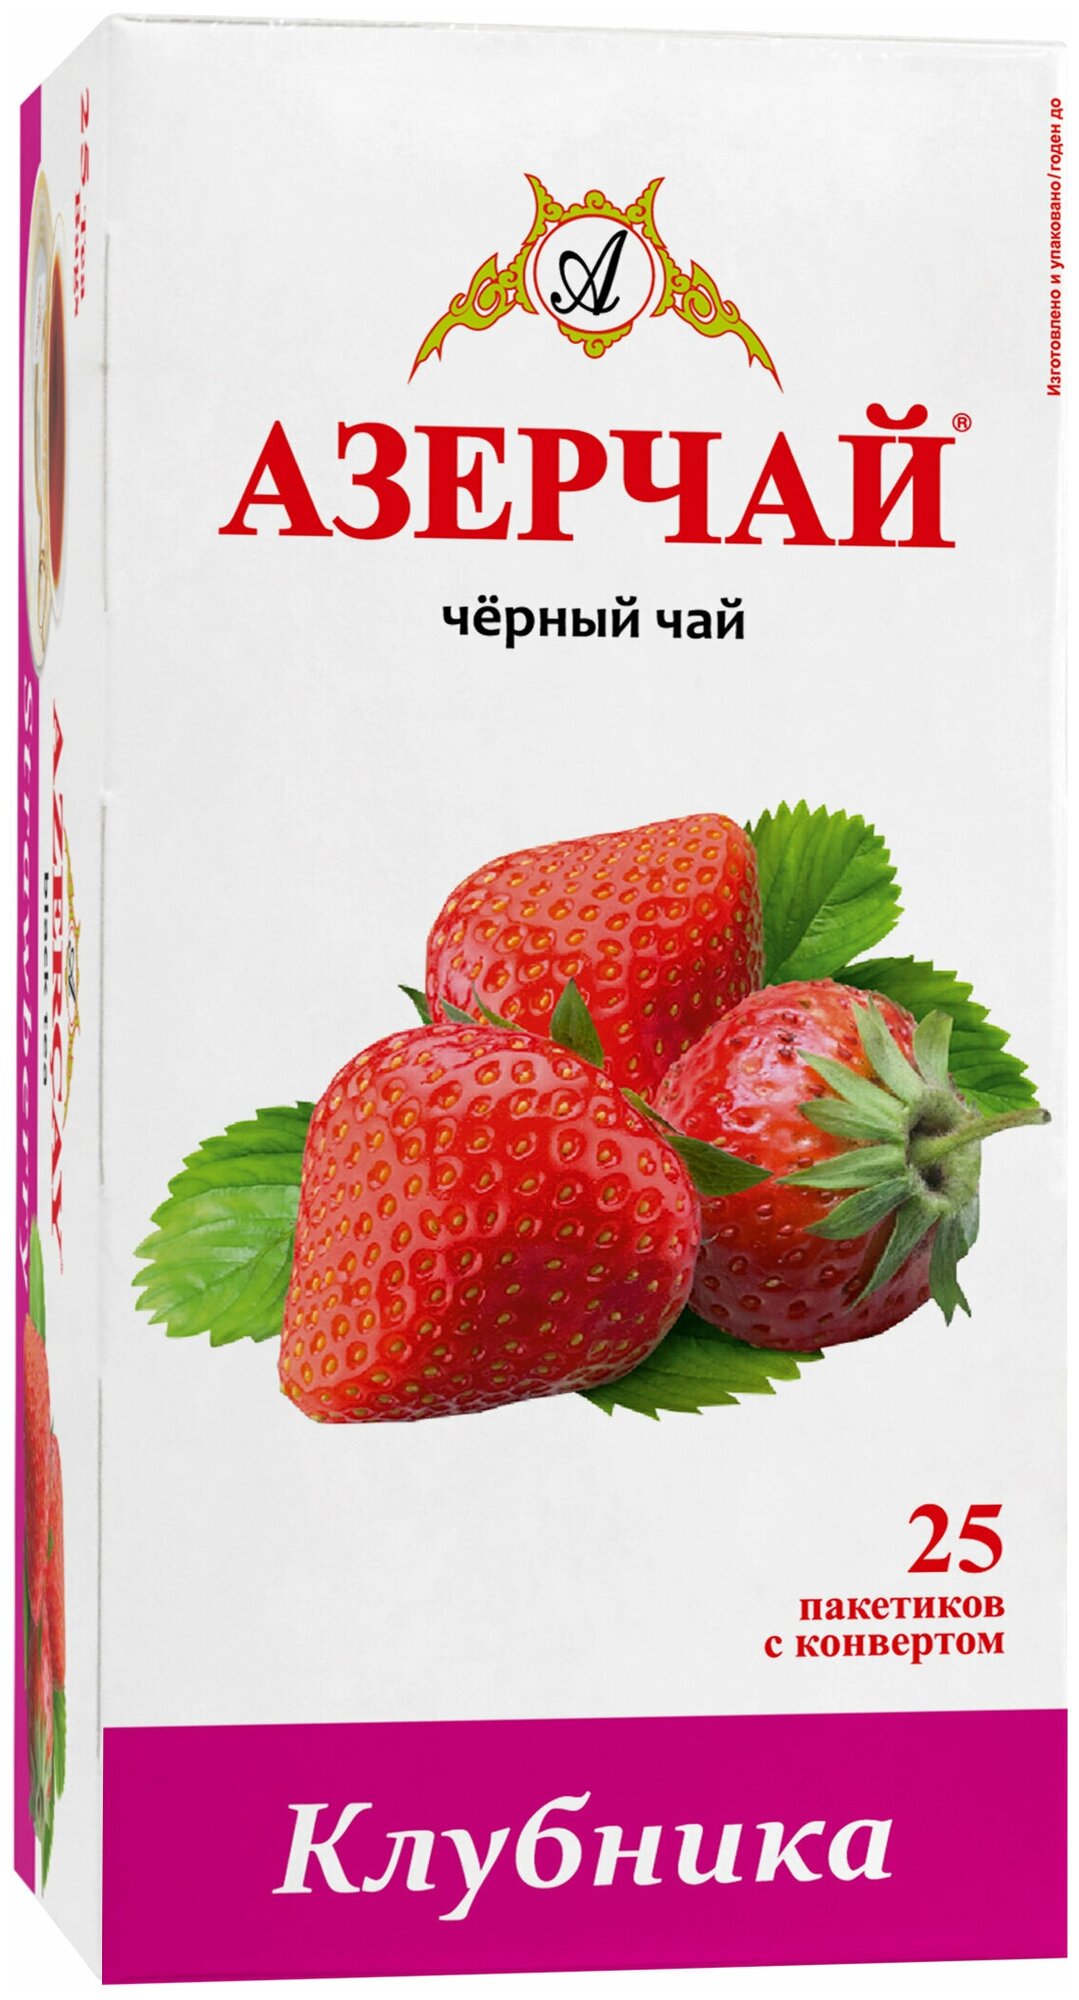 Чай в пакетиках черный Азерчай, с клубникой, 25 шт, в сашетах